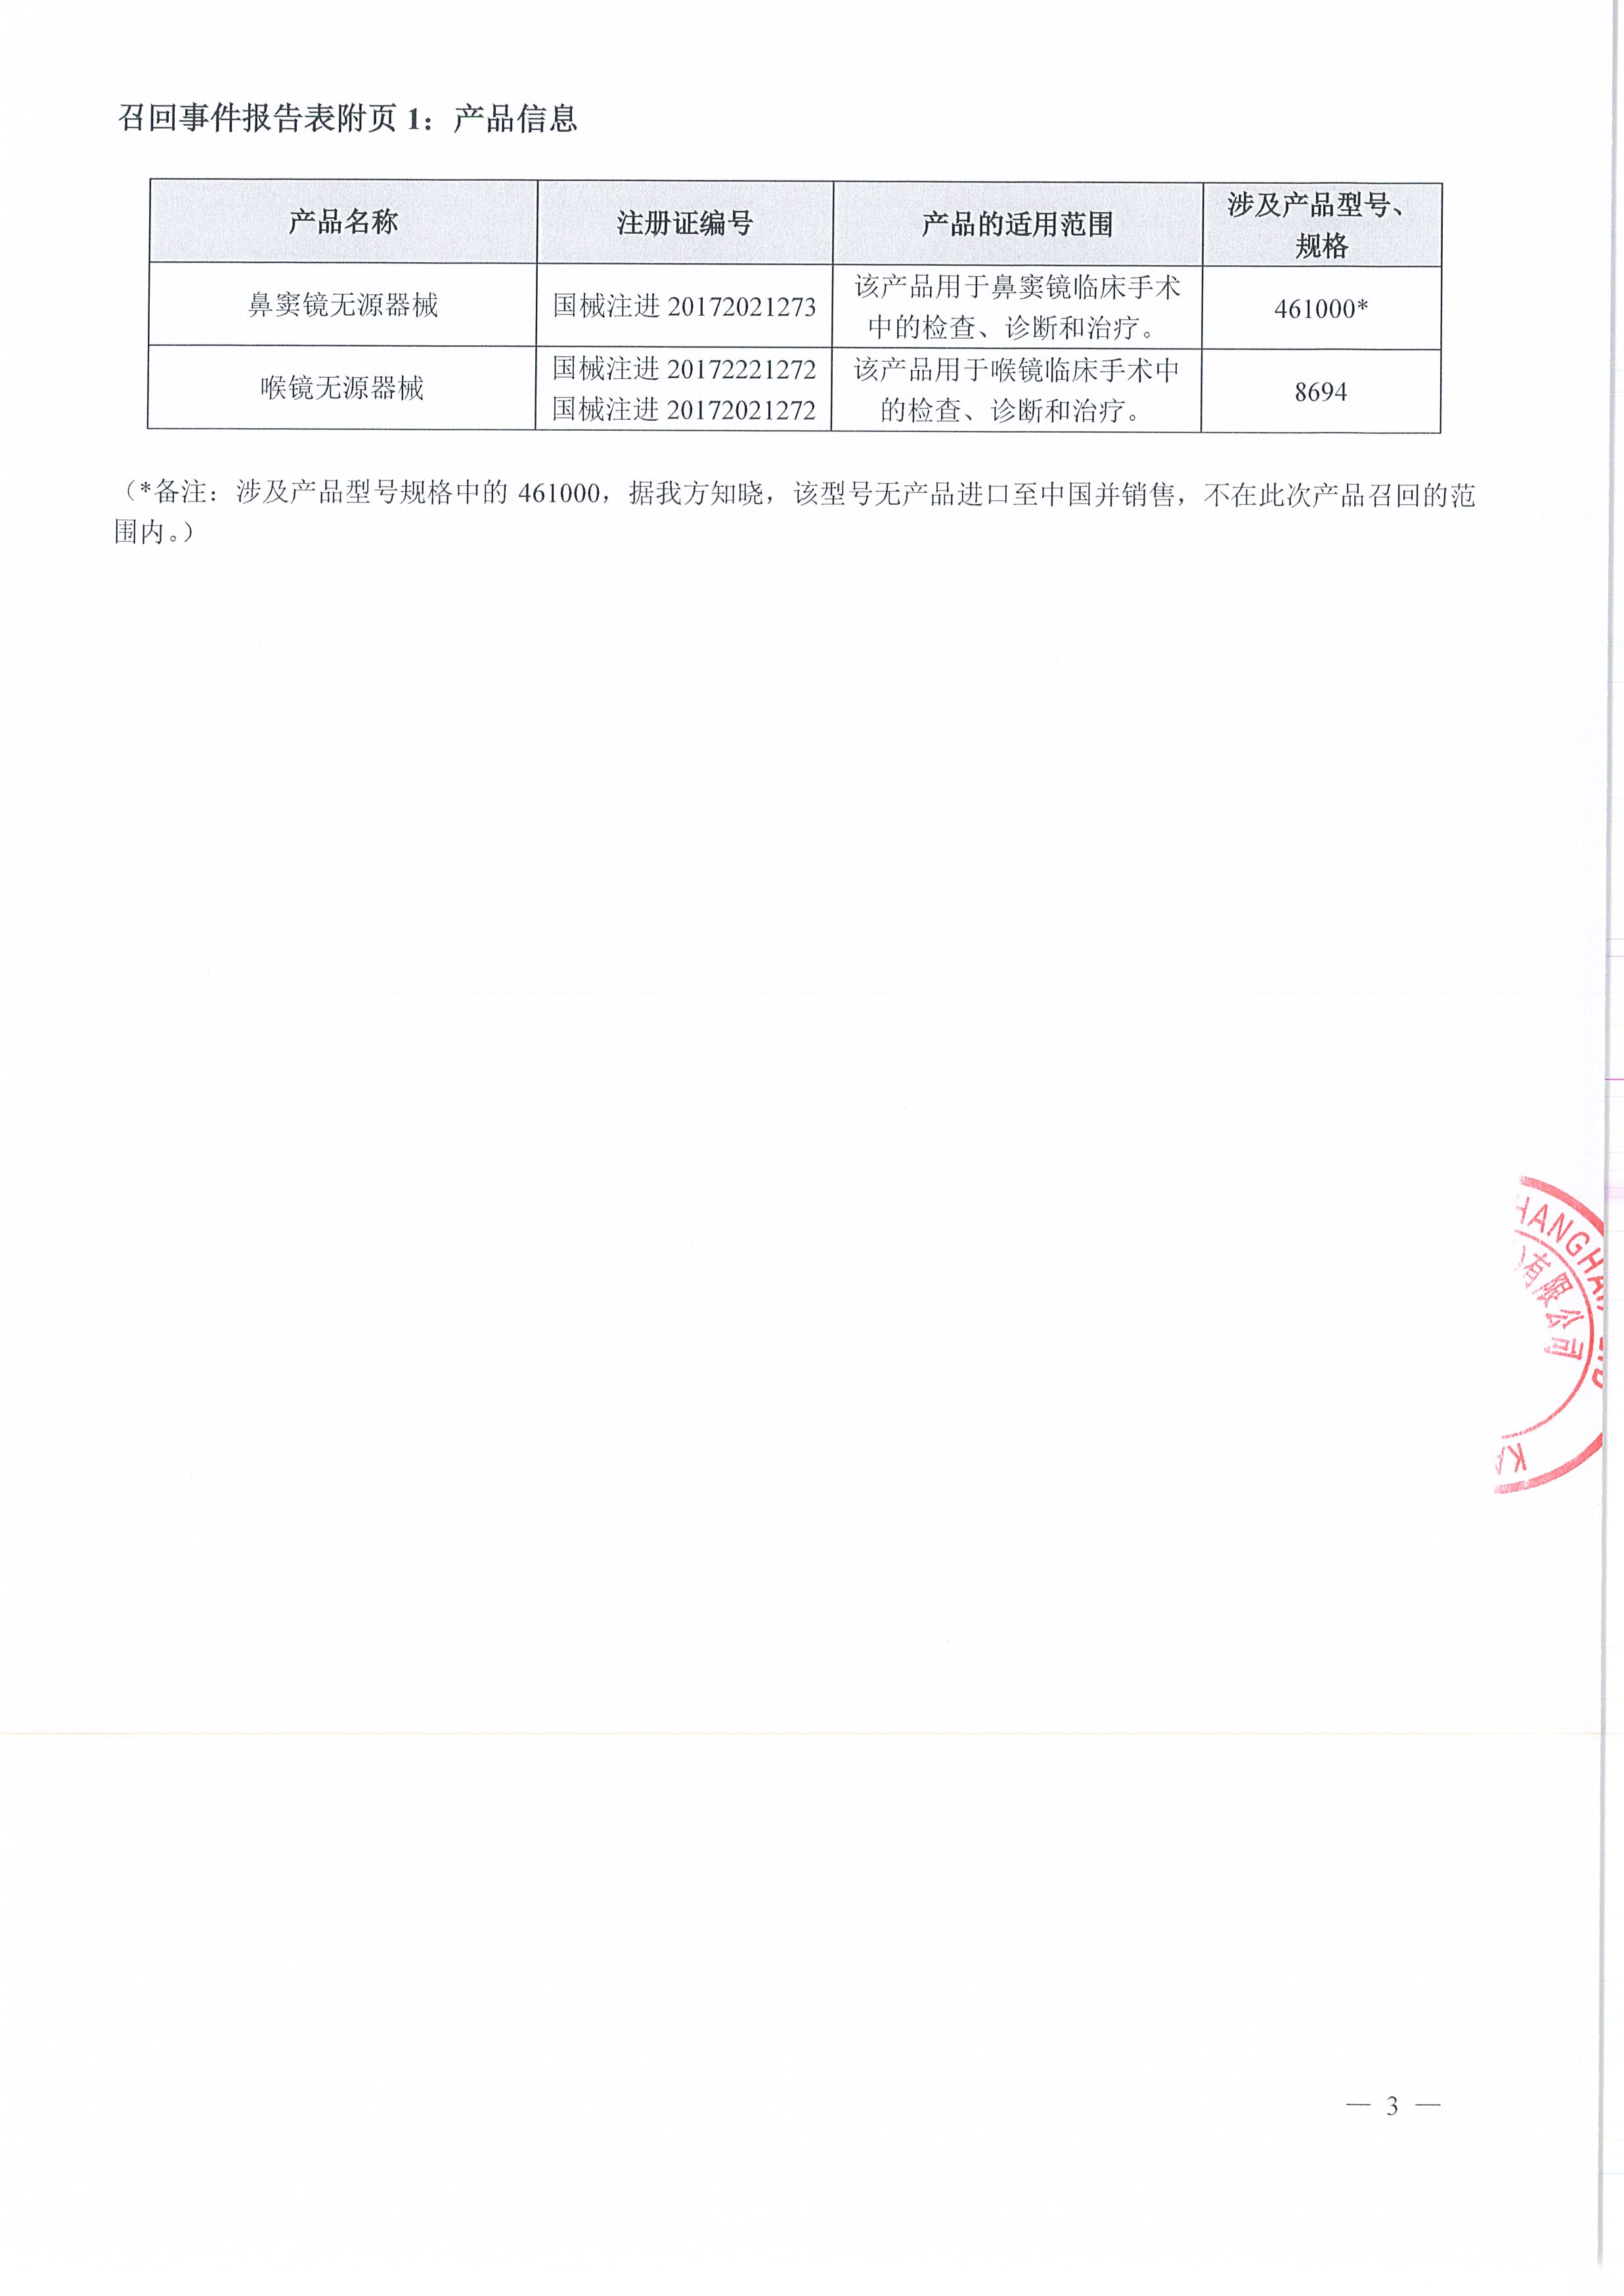 卡尔史托斯内窥镜（上海）有限公司对喉镜无源器械、鼻窦镜无源器械主动召回（沪药监械主召2024-079）